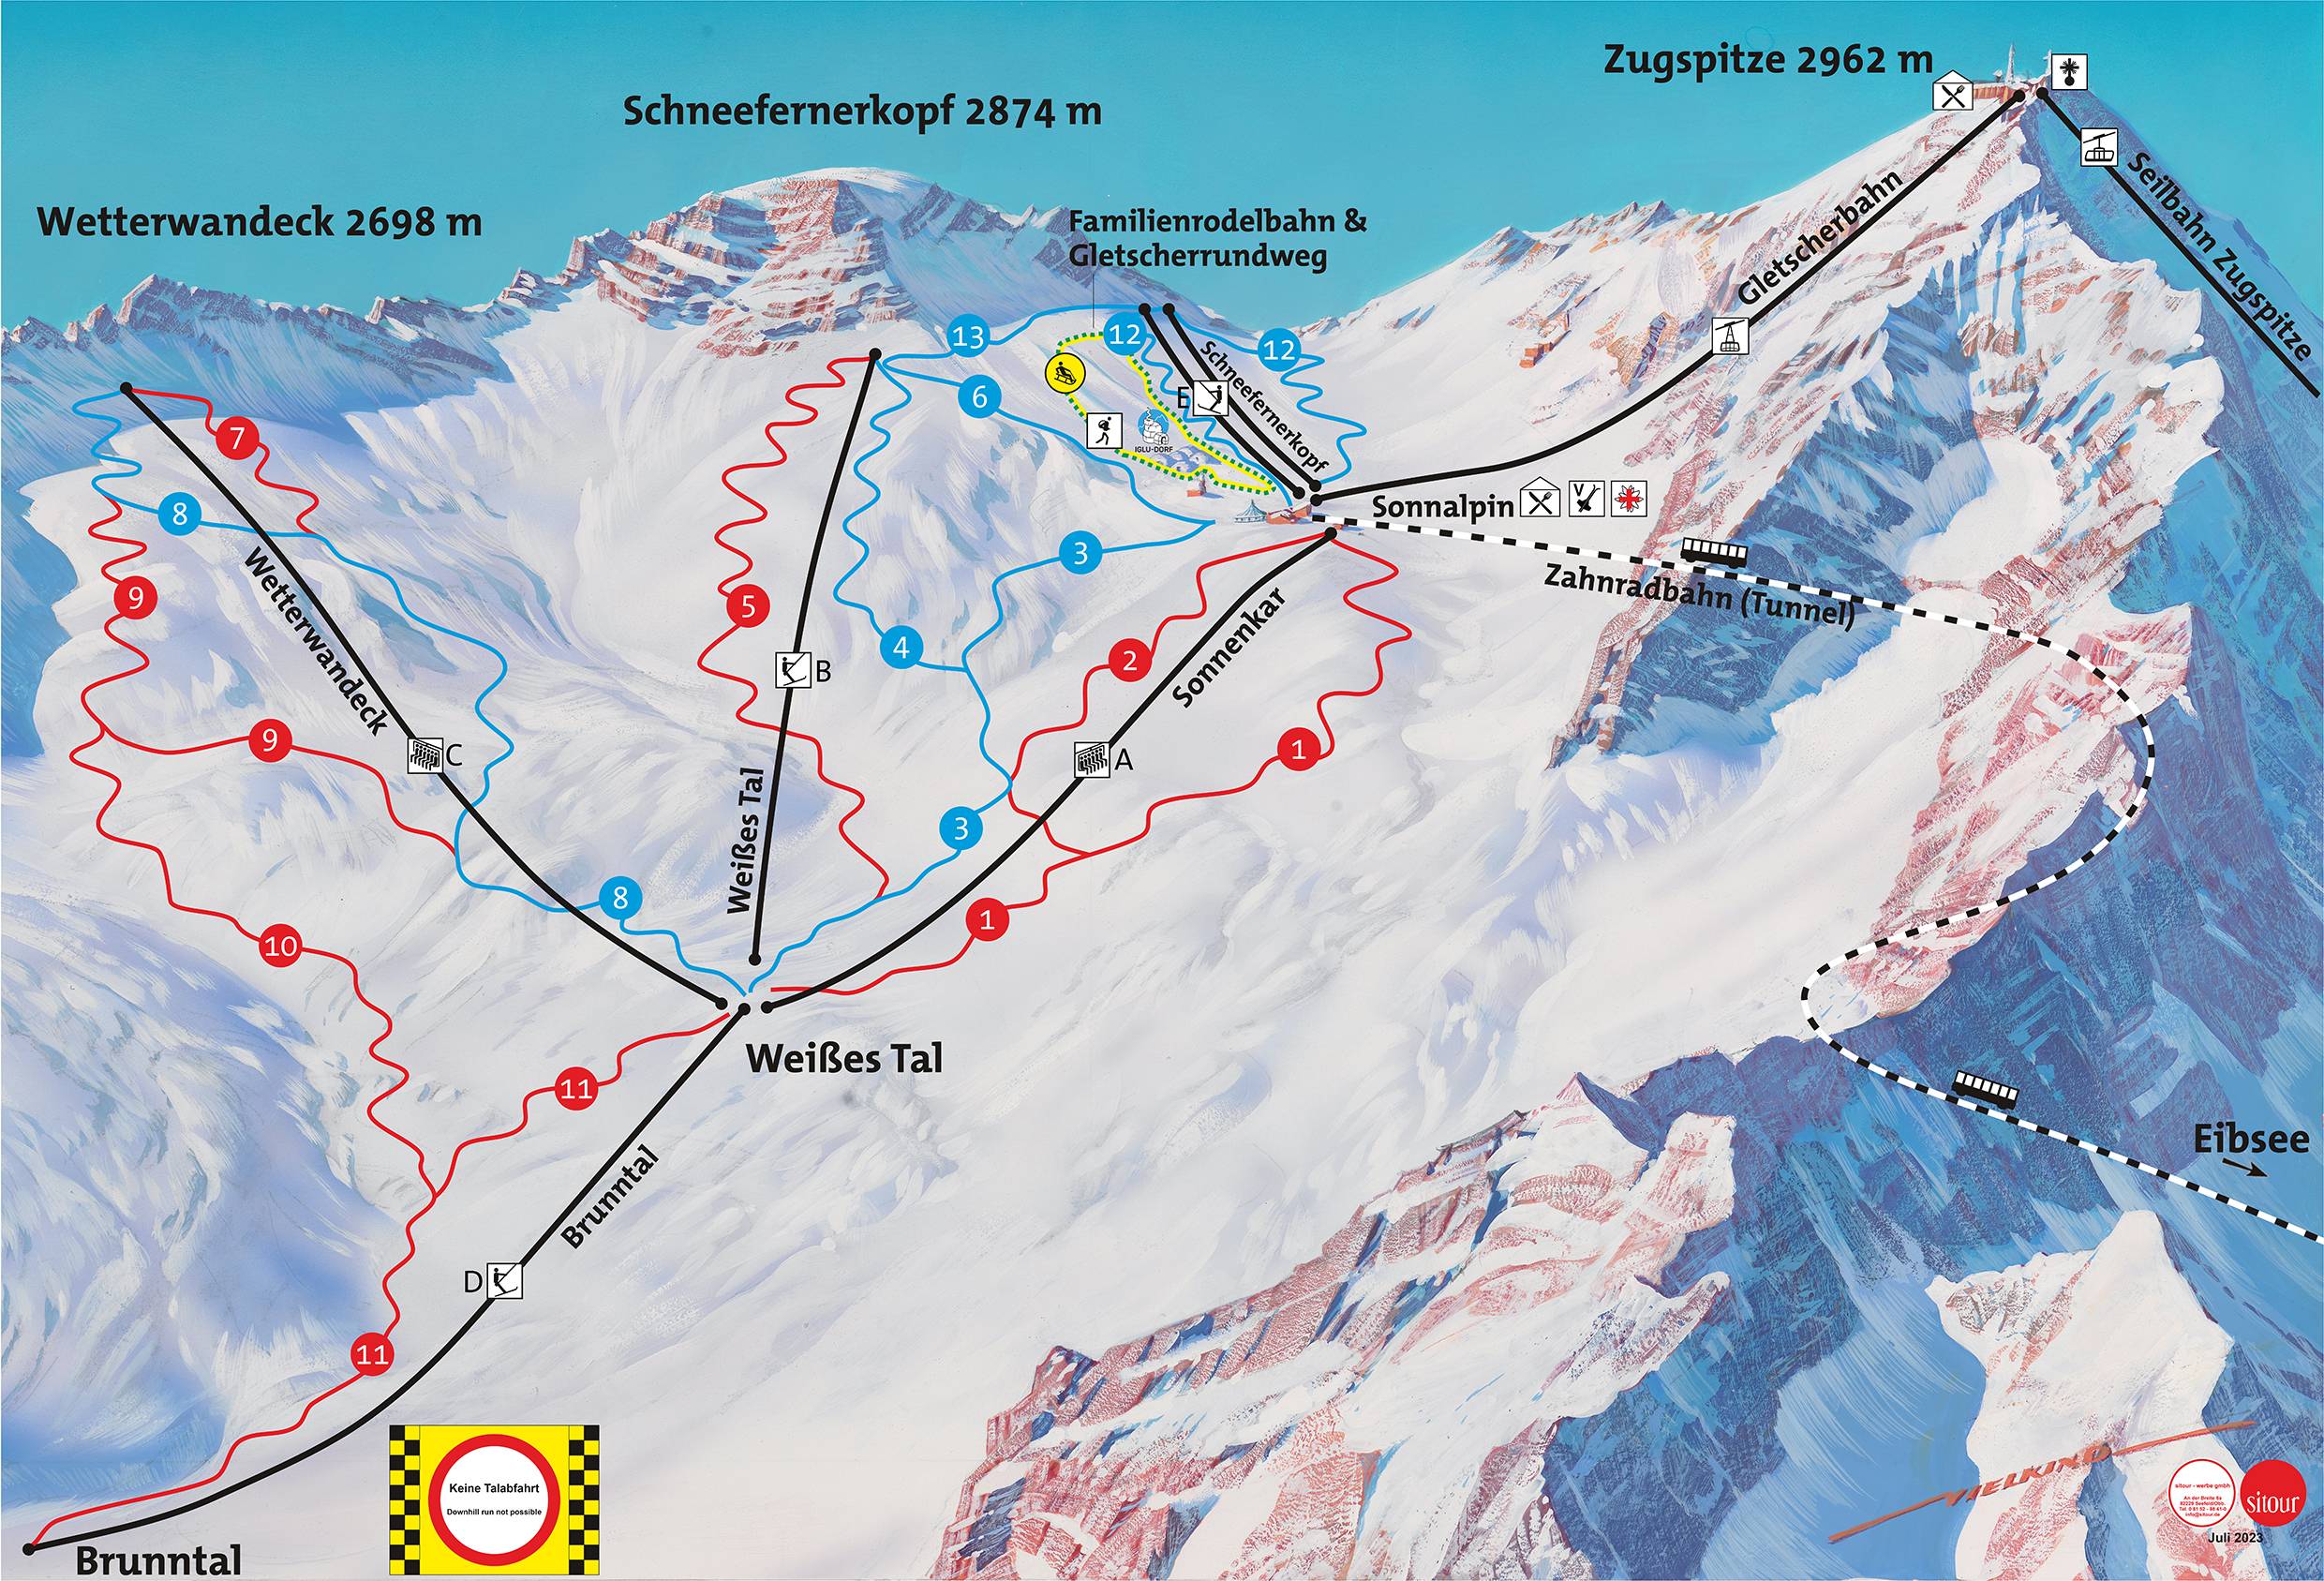 Tagesskipass: Zugspitze